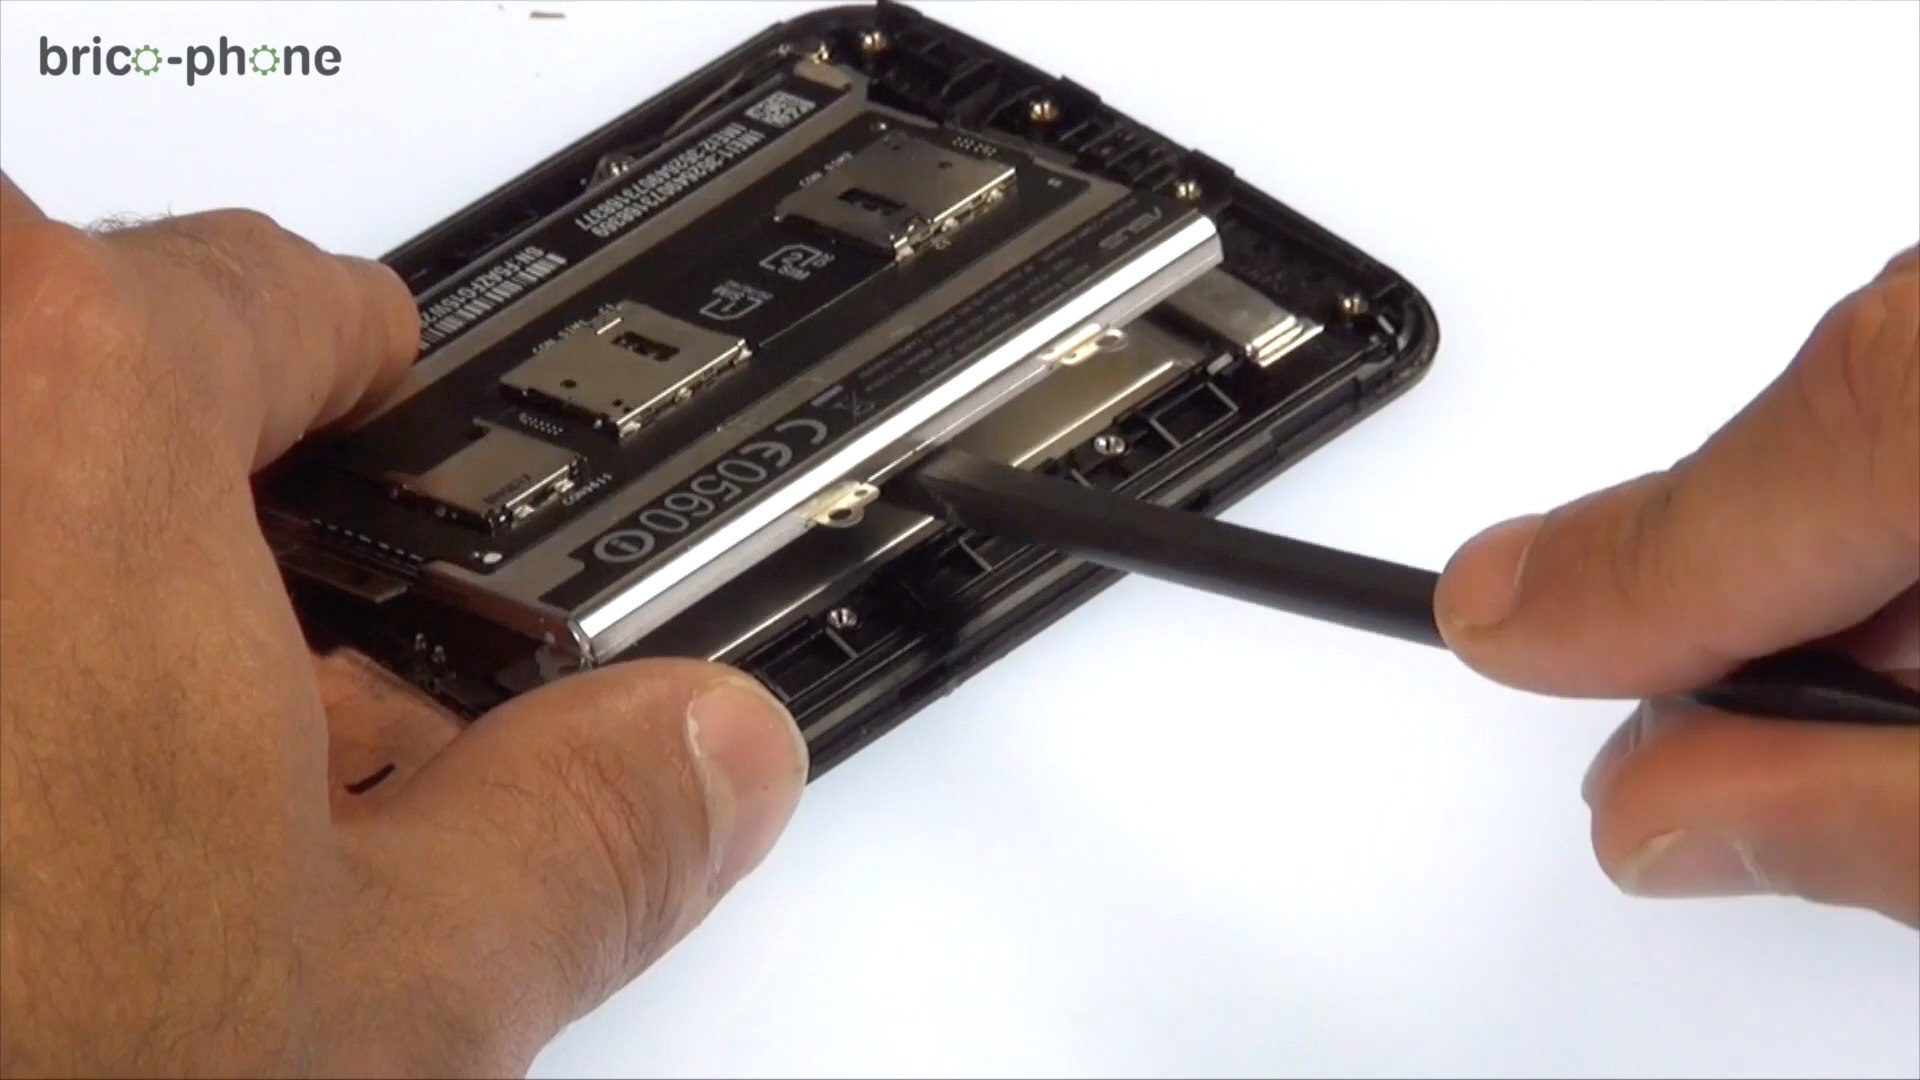 Tutoriel Asus Zenfone 2 : comment changer la batterie HD - Vidéo Dailymotion